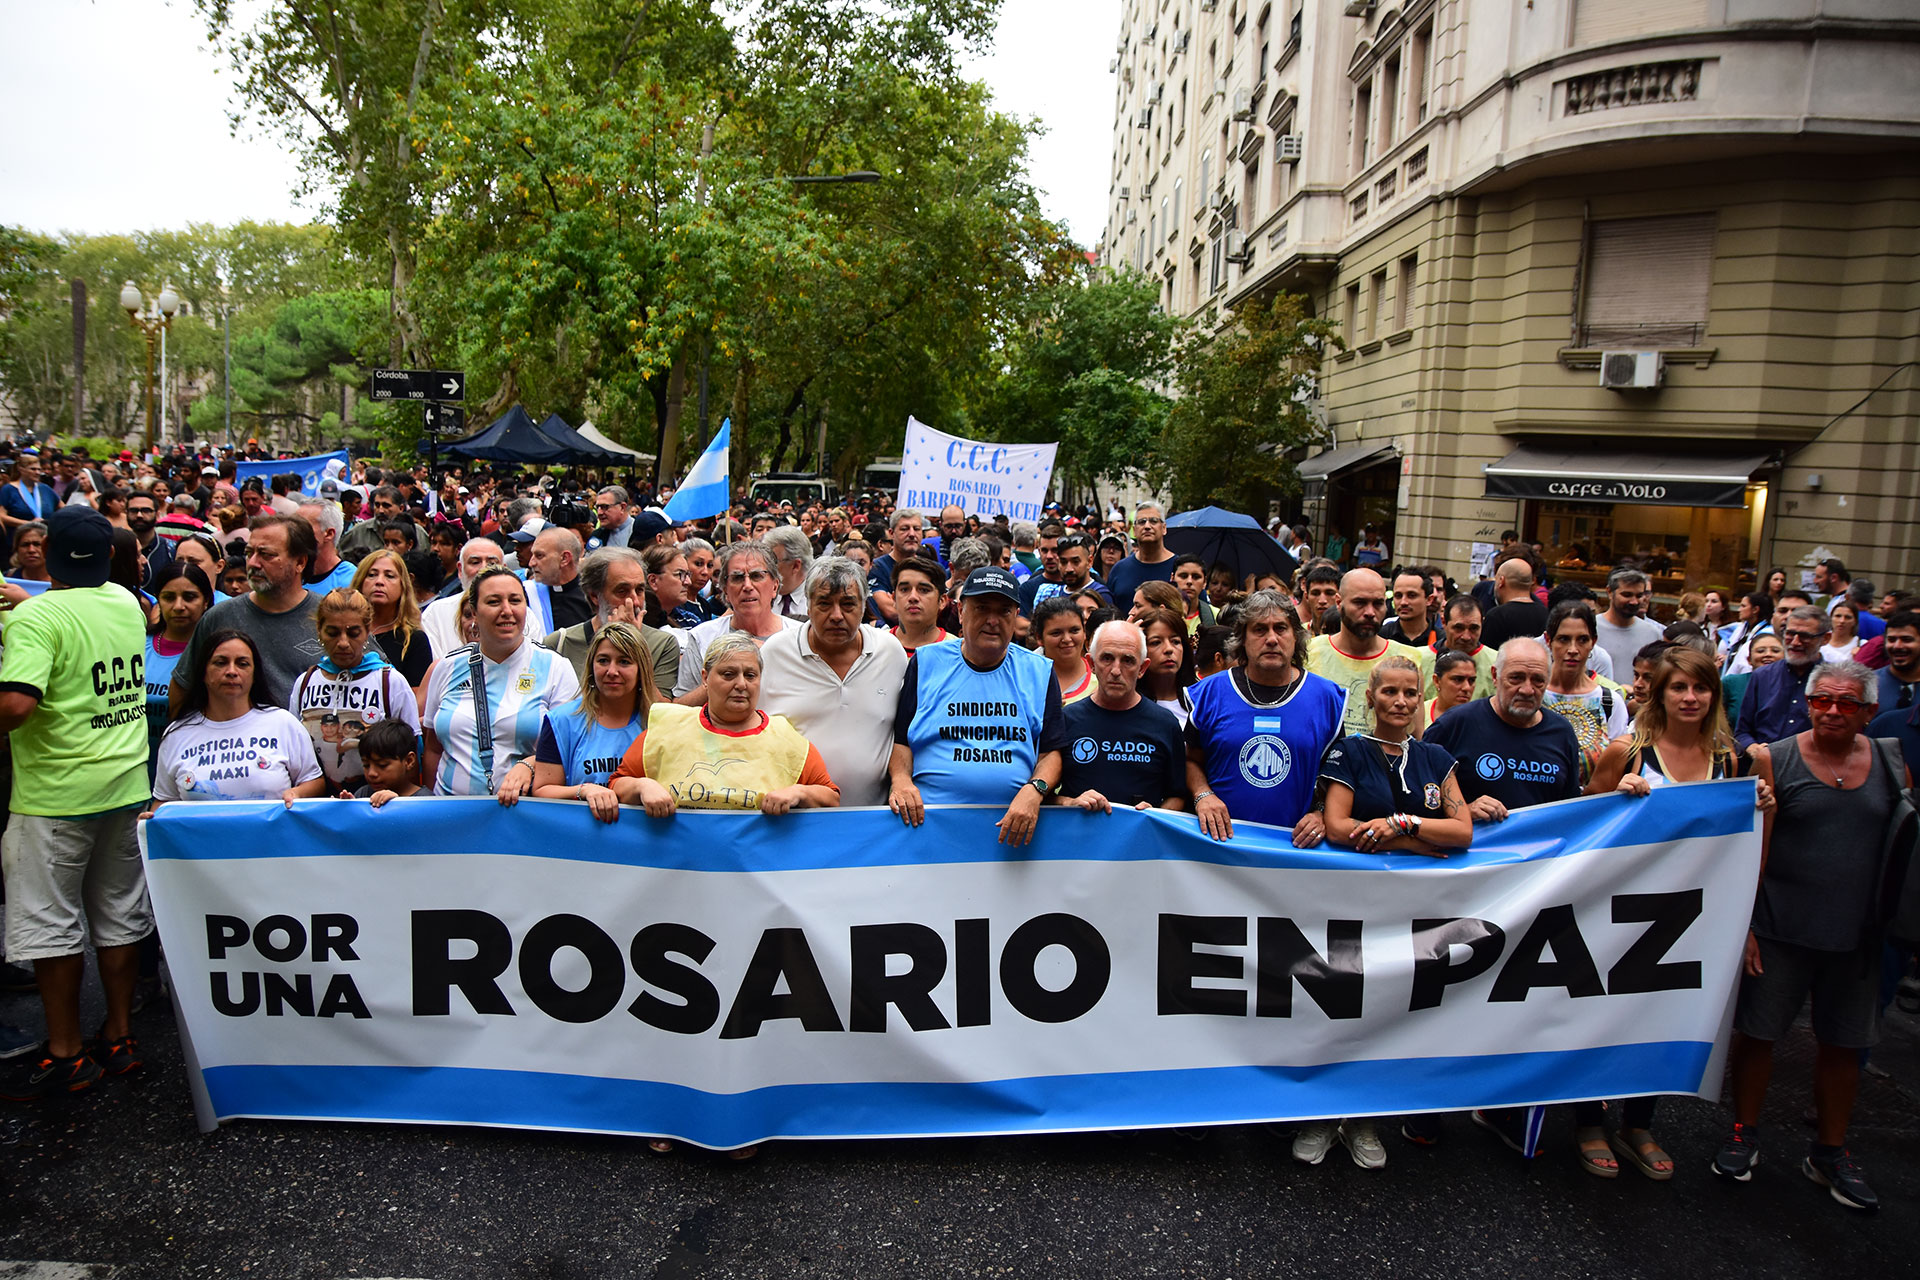 La marcha, que se realizó en silencio, se inició pasadas las 17 en la intersección de Dorrego y Santa Fe, donde se encuentra la sede de Gobernación en Rosario 